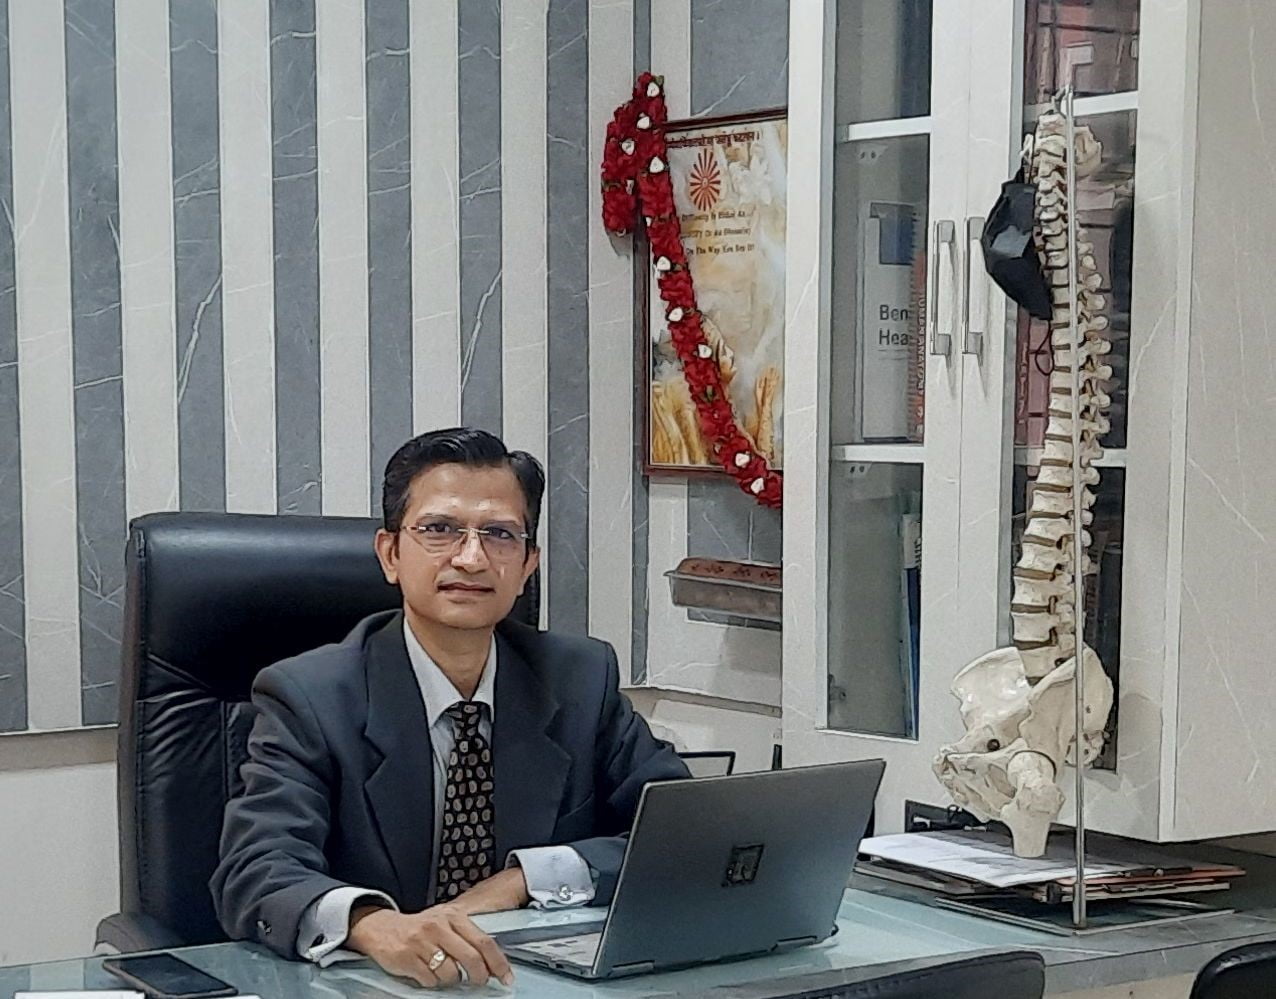 Dr. Yogesh K. Pithwa